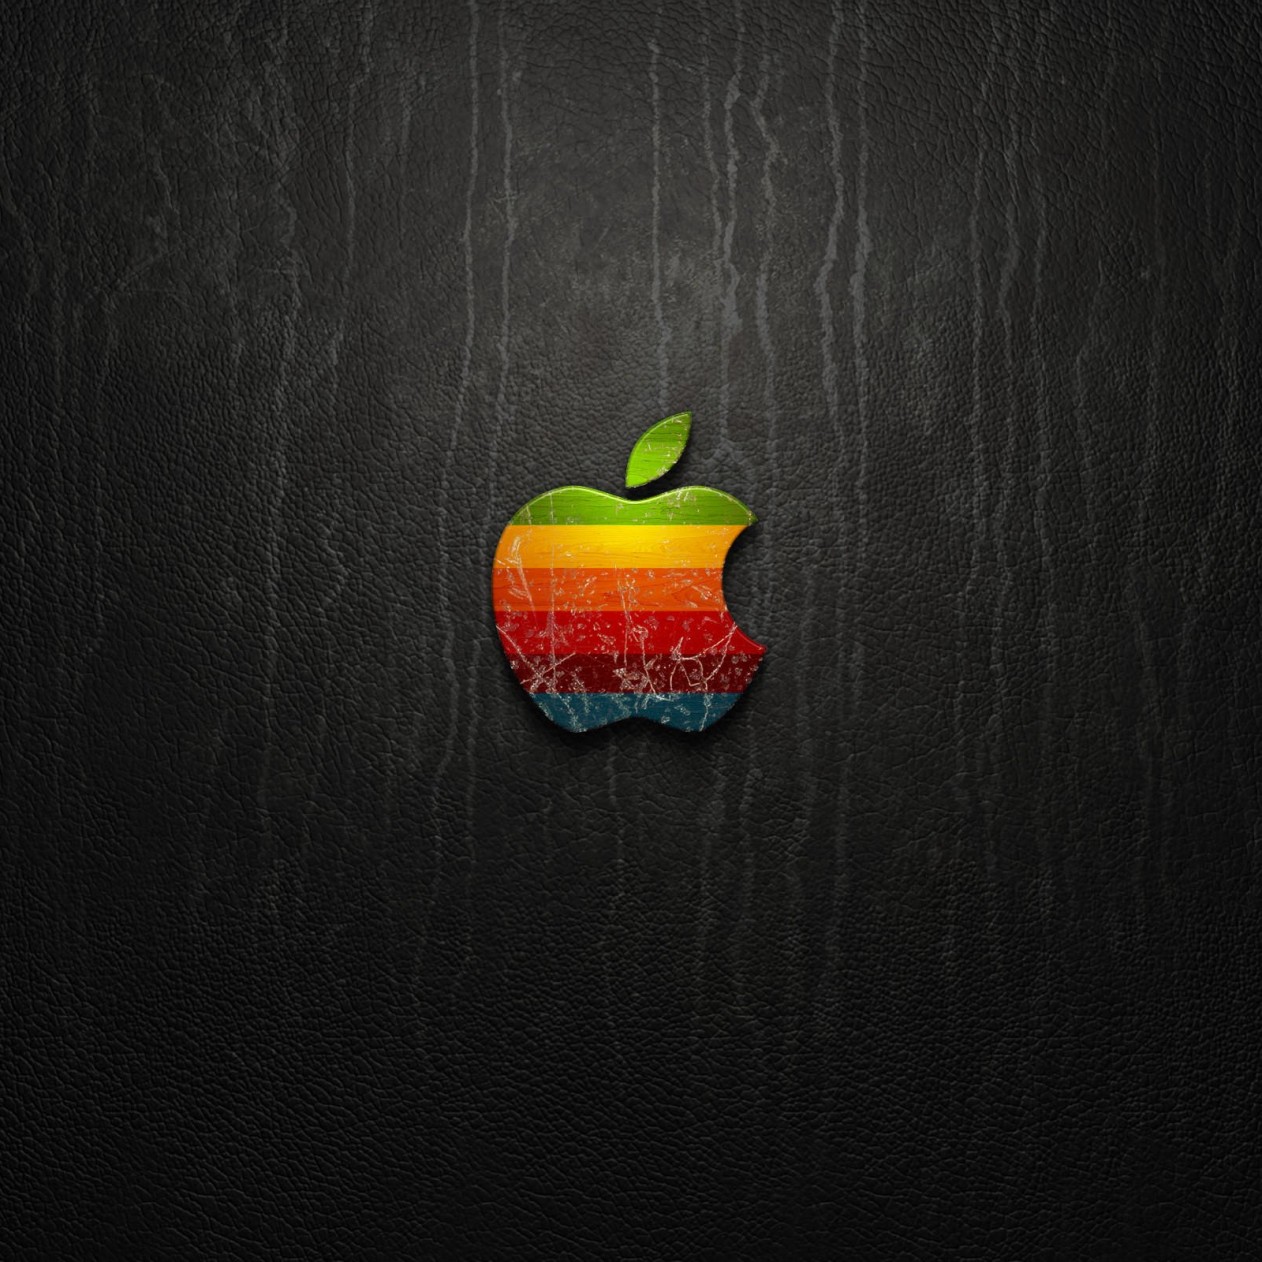 Multicolored Apple Logo Wallpaper for Apple iPad mini